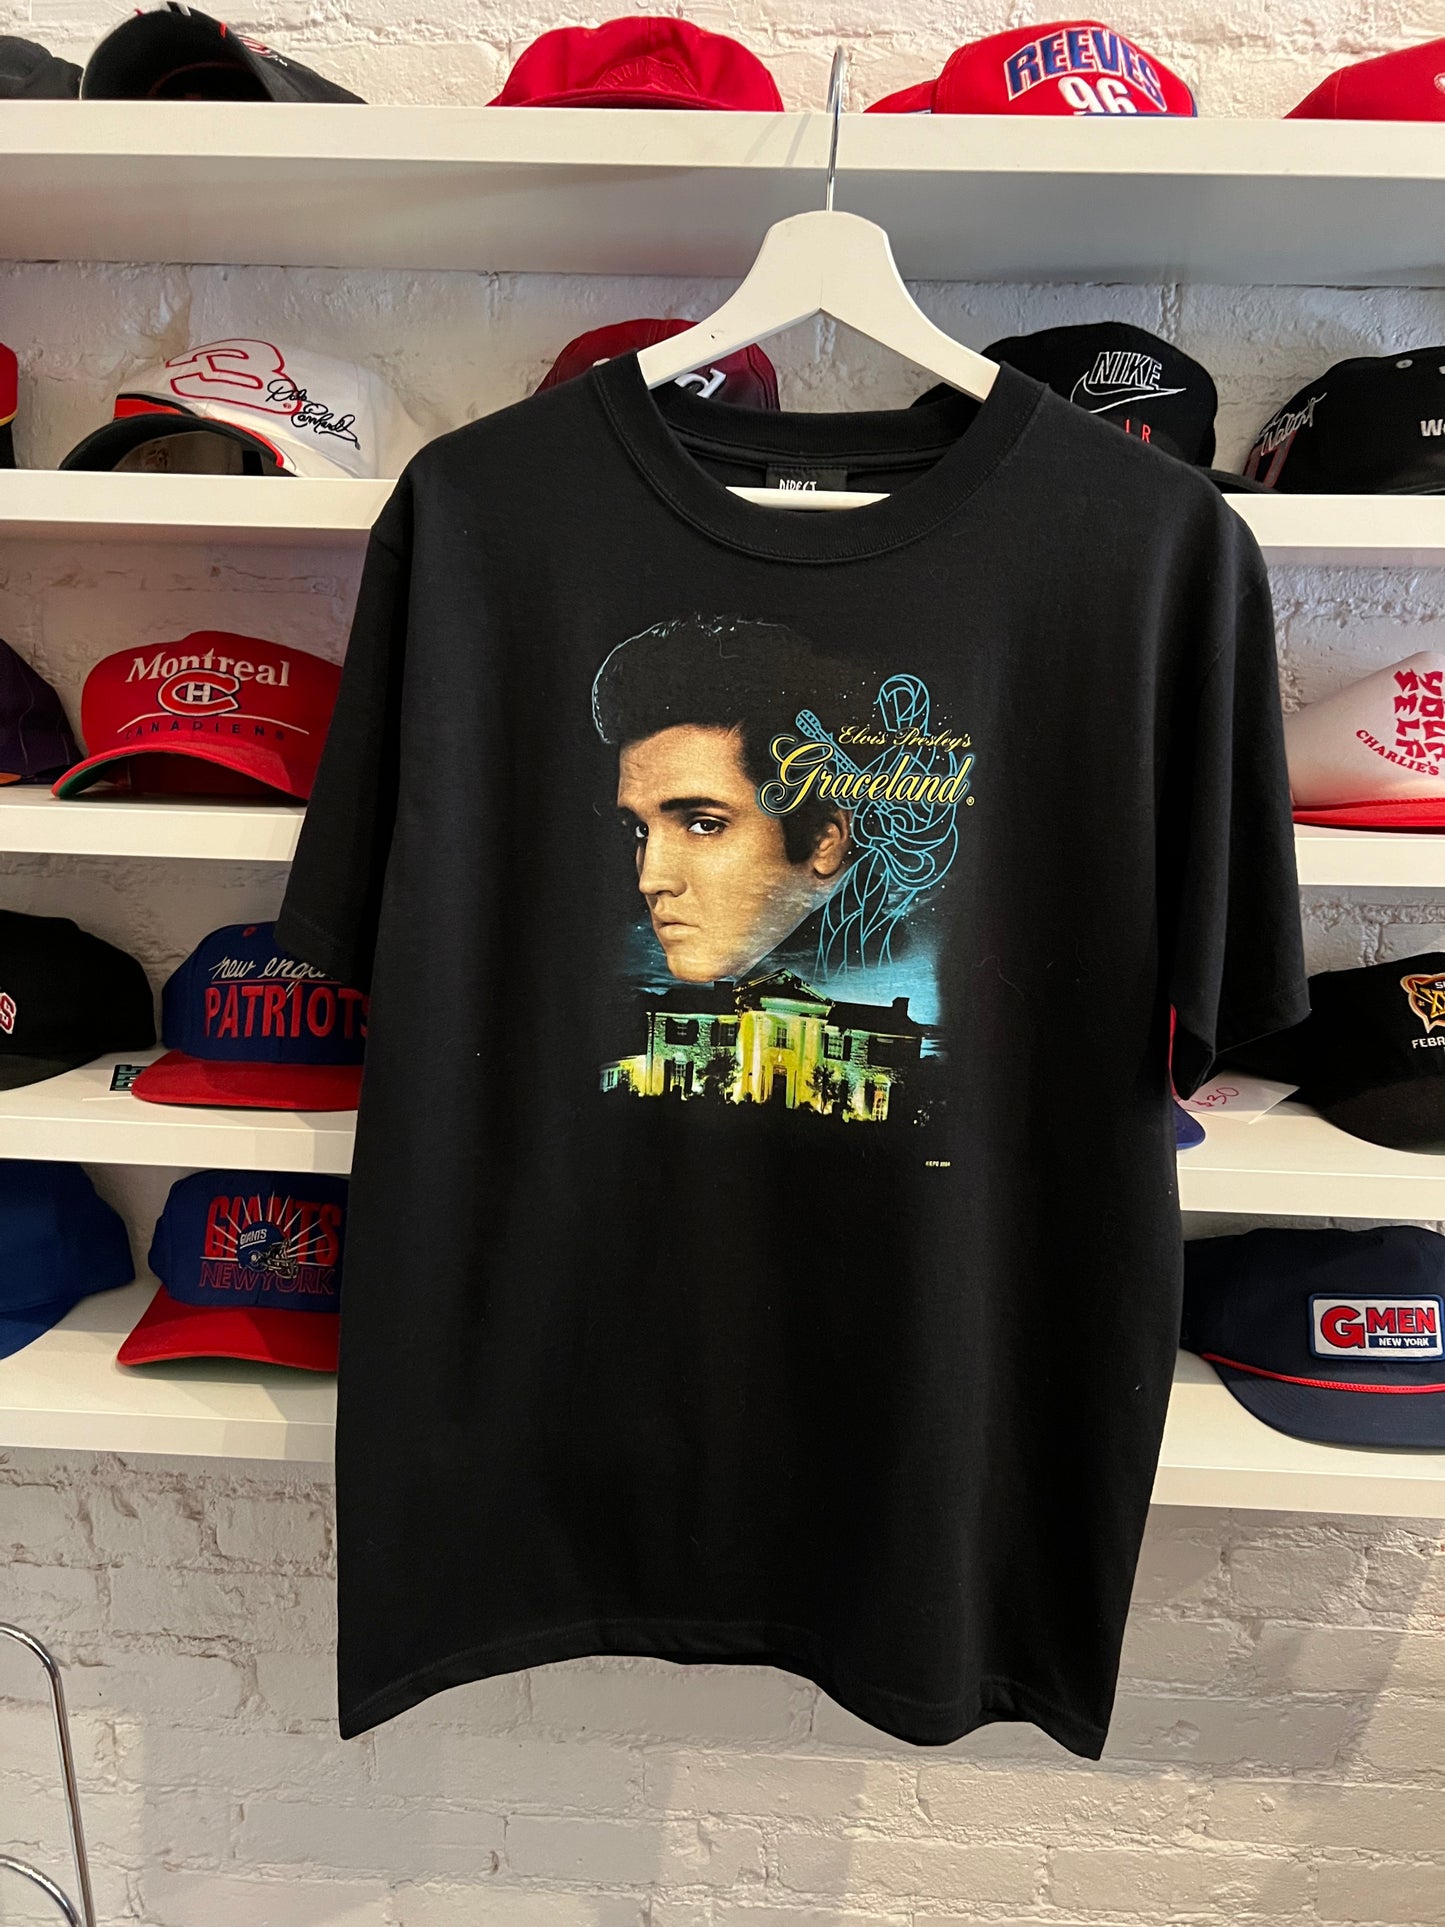 Elvis Graceland T-shirt size M